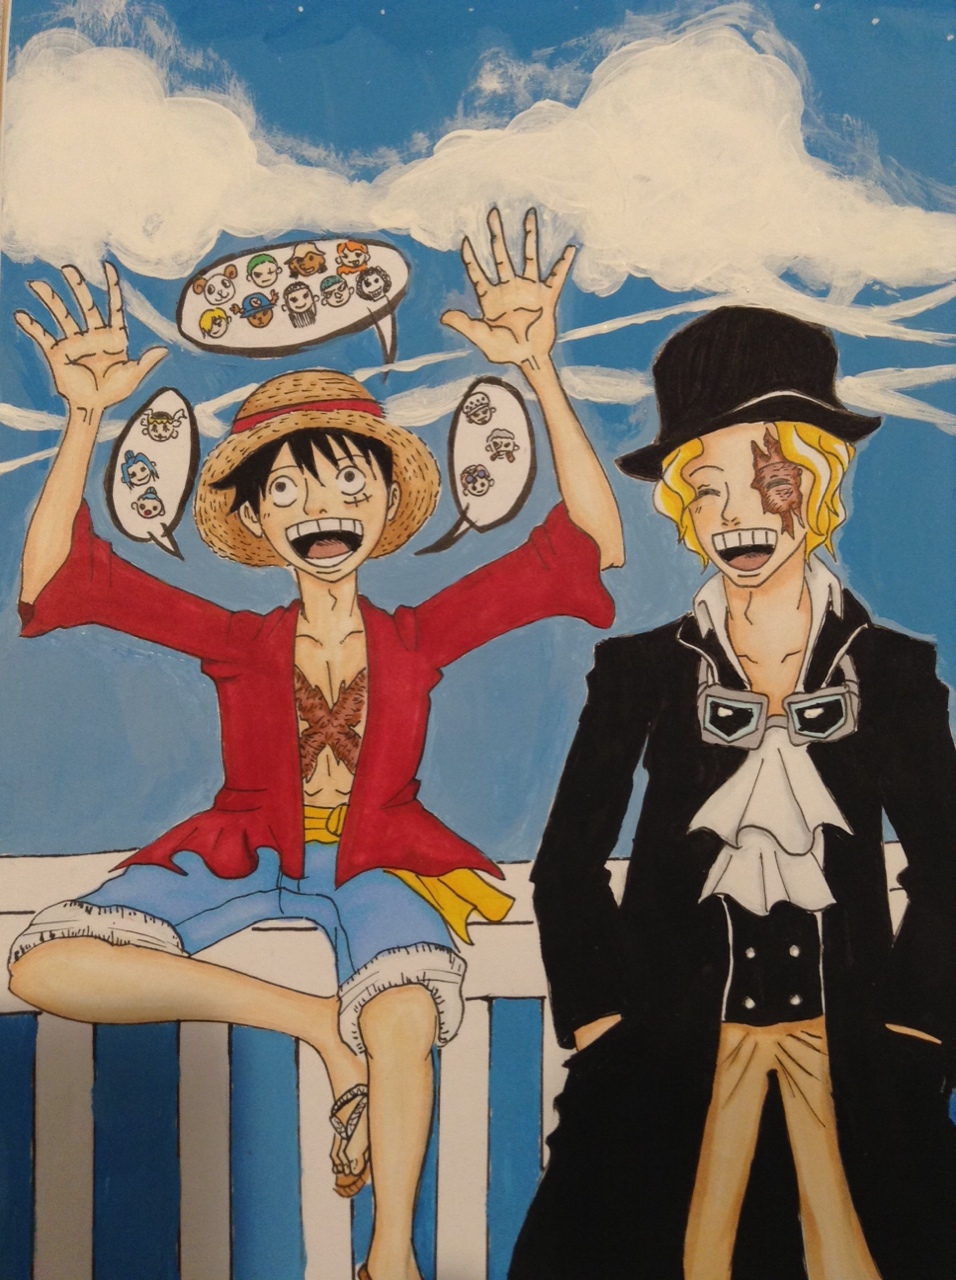 Với những fan hâm mộ One Piece, bạn hãy cùng tô màu và vẽ hình Luffy để tạo ra một tác phẩm nghệ thuật đầy sáng tạo. Bộ truyện được đánh giá là tuyệt vời với hình ảnh cổ điển nhưng vẫn rất hiện đại. Hãy để bản vẽ của bạn trở thành một sự thăng hoa với niềm đam mê cho bộ truyện này. Translation: For One Piece fans, let\'s color and draw Luffy\'s image to create a creative artwork. The manga is rated as wonderful with classic yet modern images. Let your drawing become a great expression of your passion for this manga.